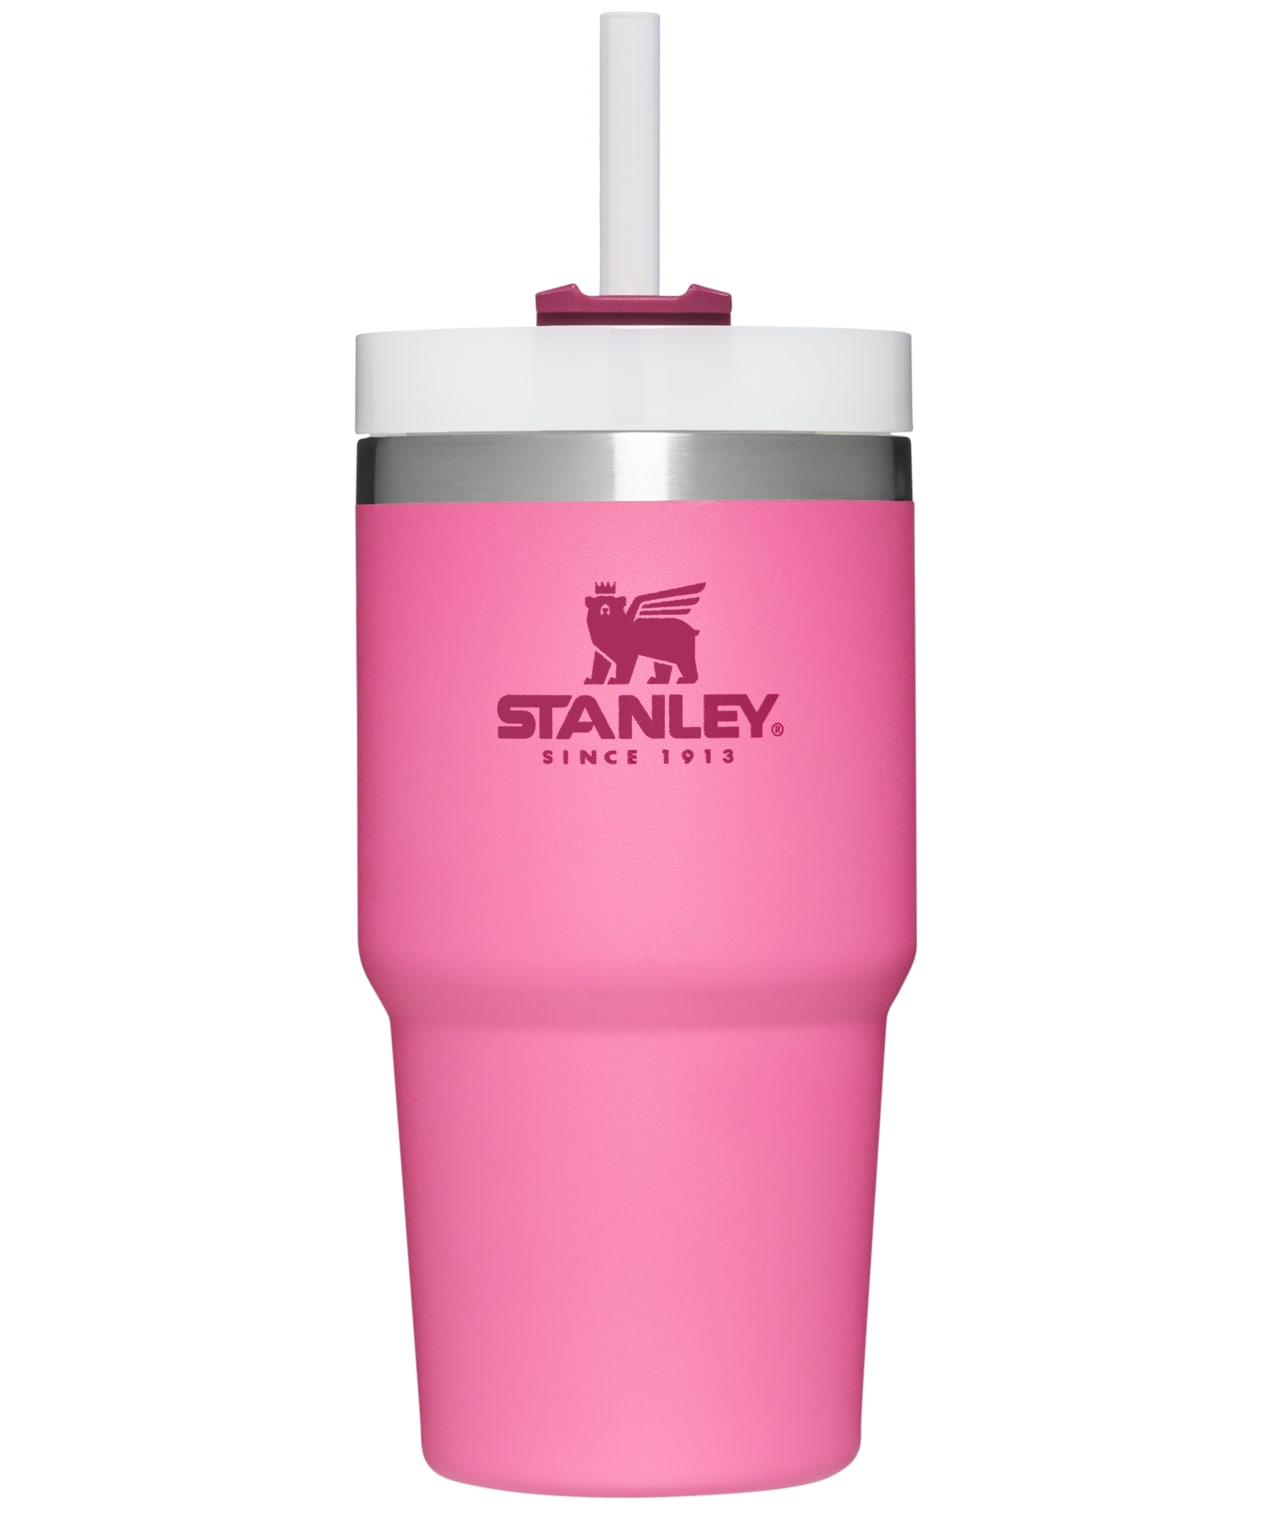 Stanley Travel mug Water Bottles & Mugs at